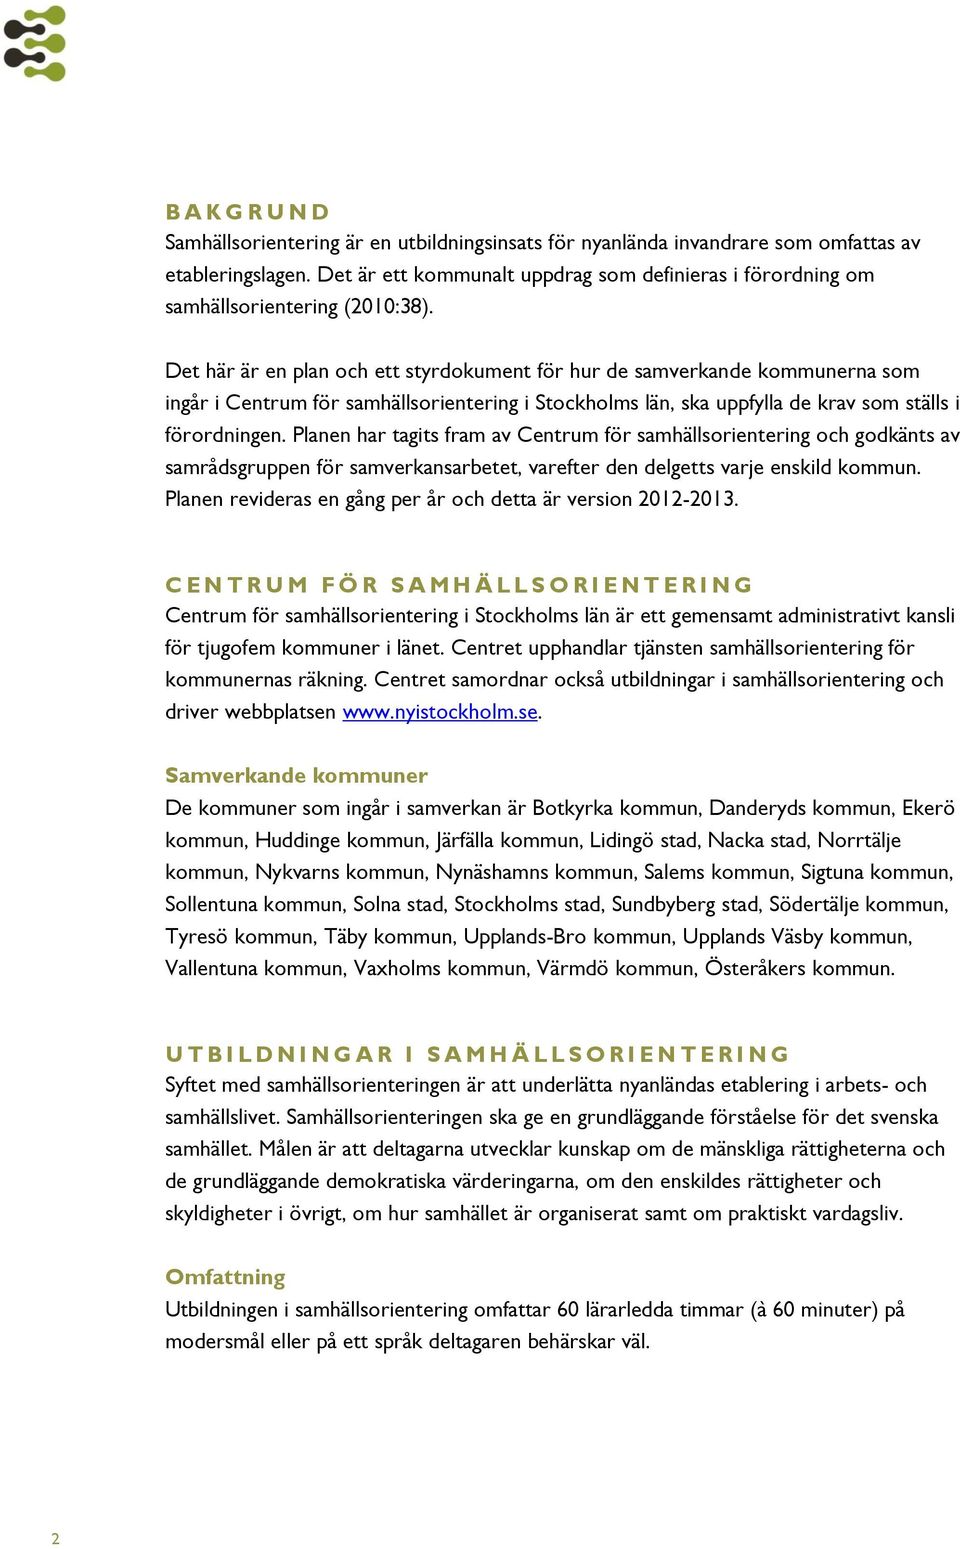 Det här är en plan och ett styrdokument för hur de samverkande kommunerna som ingår i Centrum för samhällsorientering i Stockholms län, ska uppfylla de krav som ställs i förordningen.